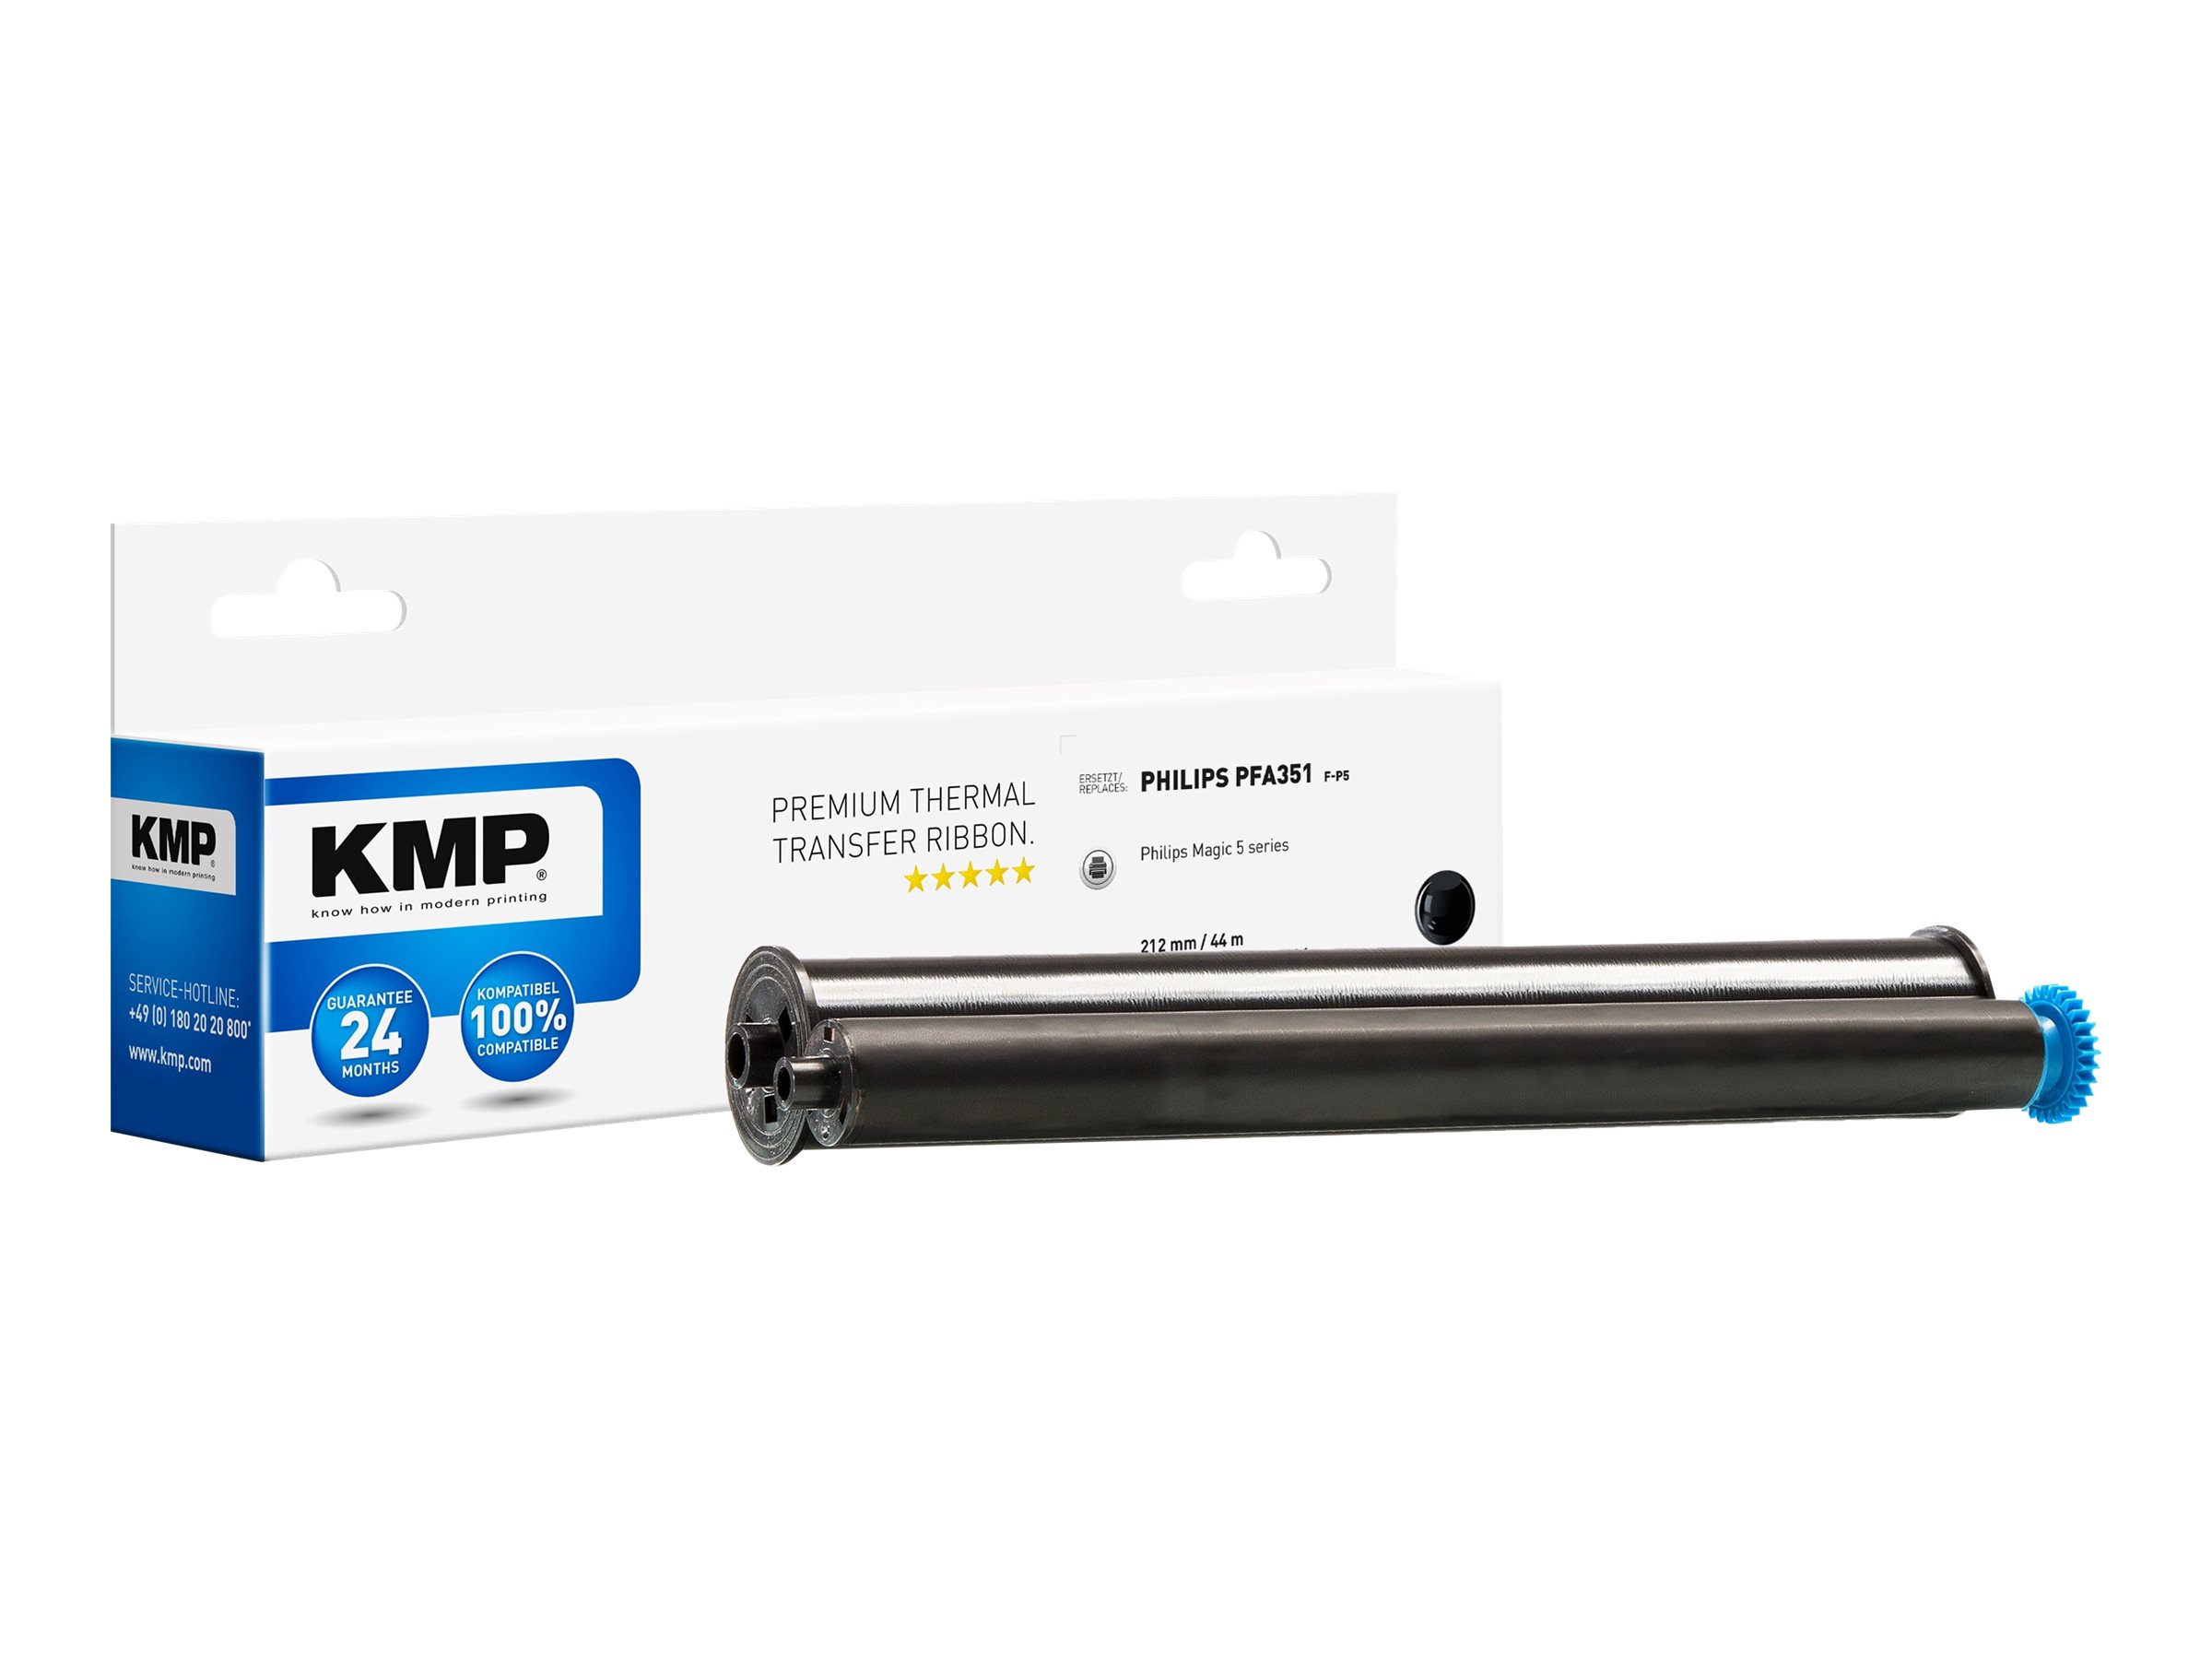 KMP F-P5 - 1 - Schwarz - 212 mm x 44 m - Farbband (Alternative zu: Philips PFA 351, Philips PFA 352)